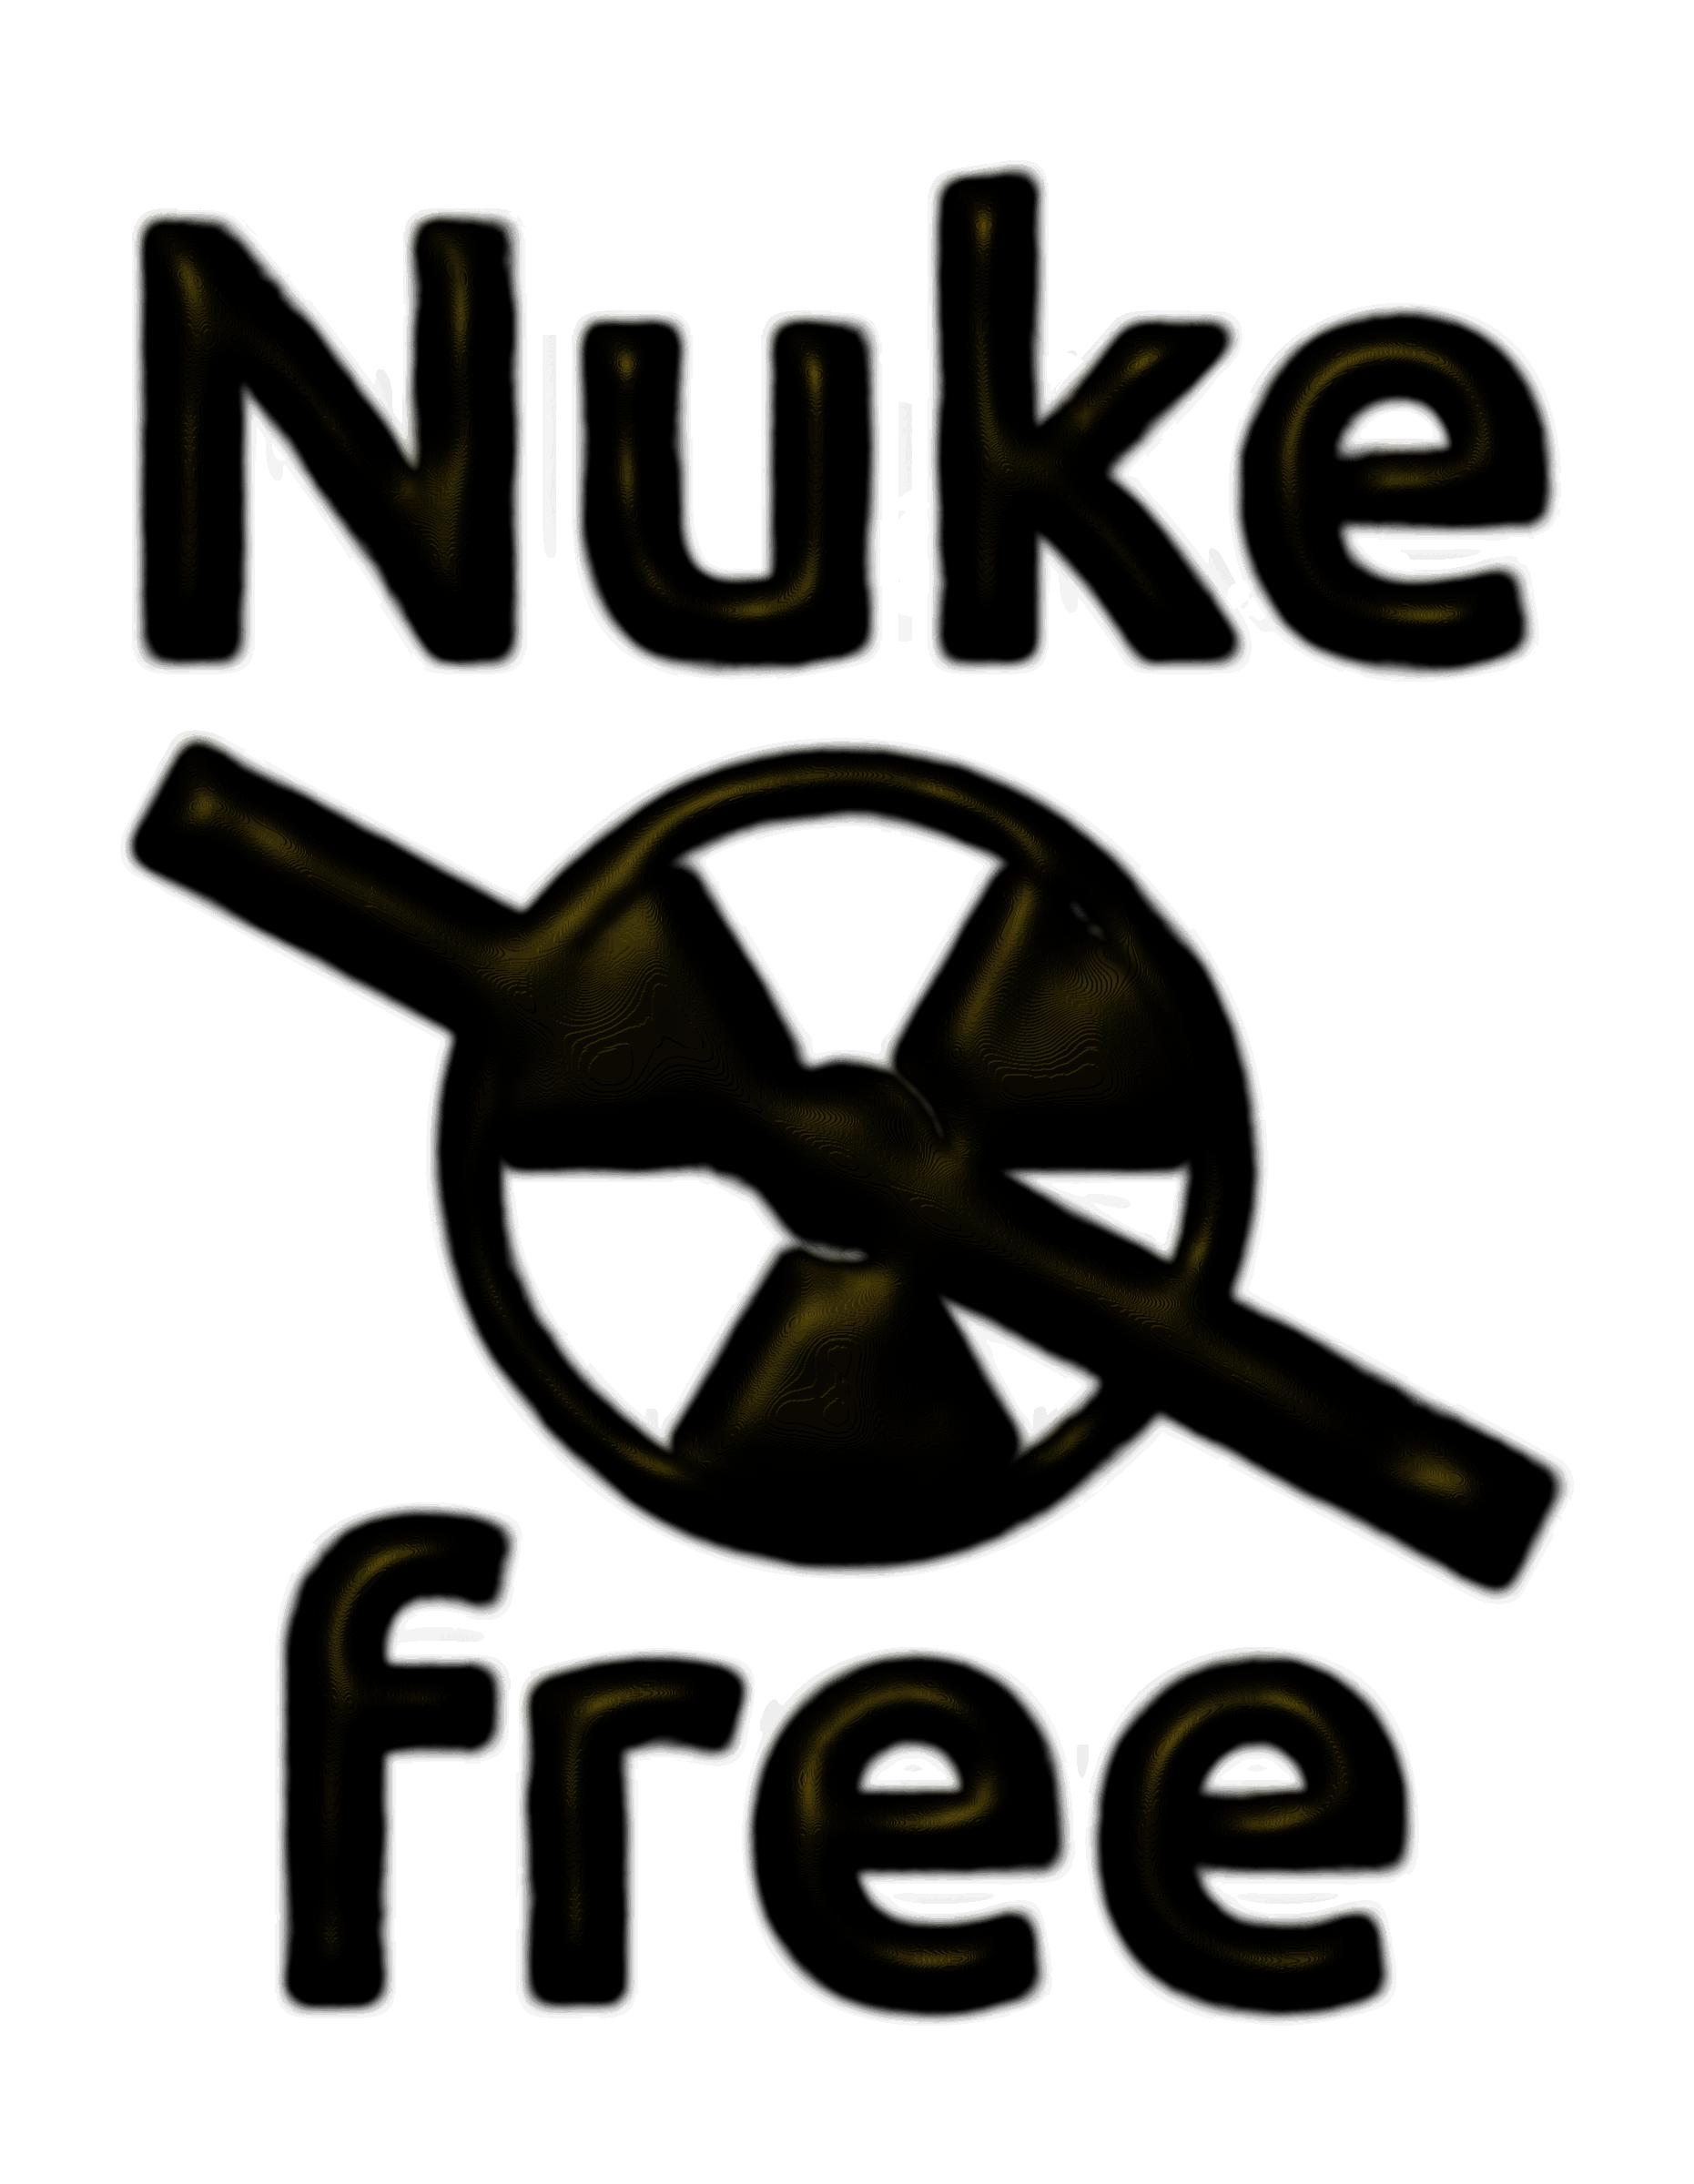 Nuke-free Eroded metal png